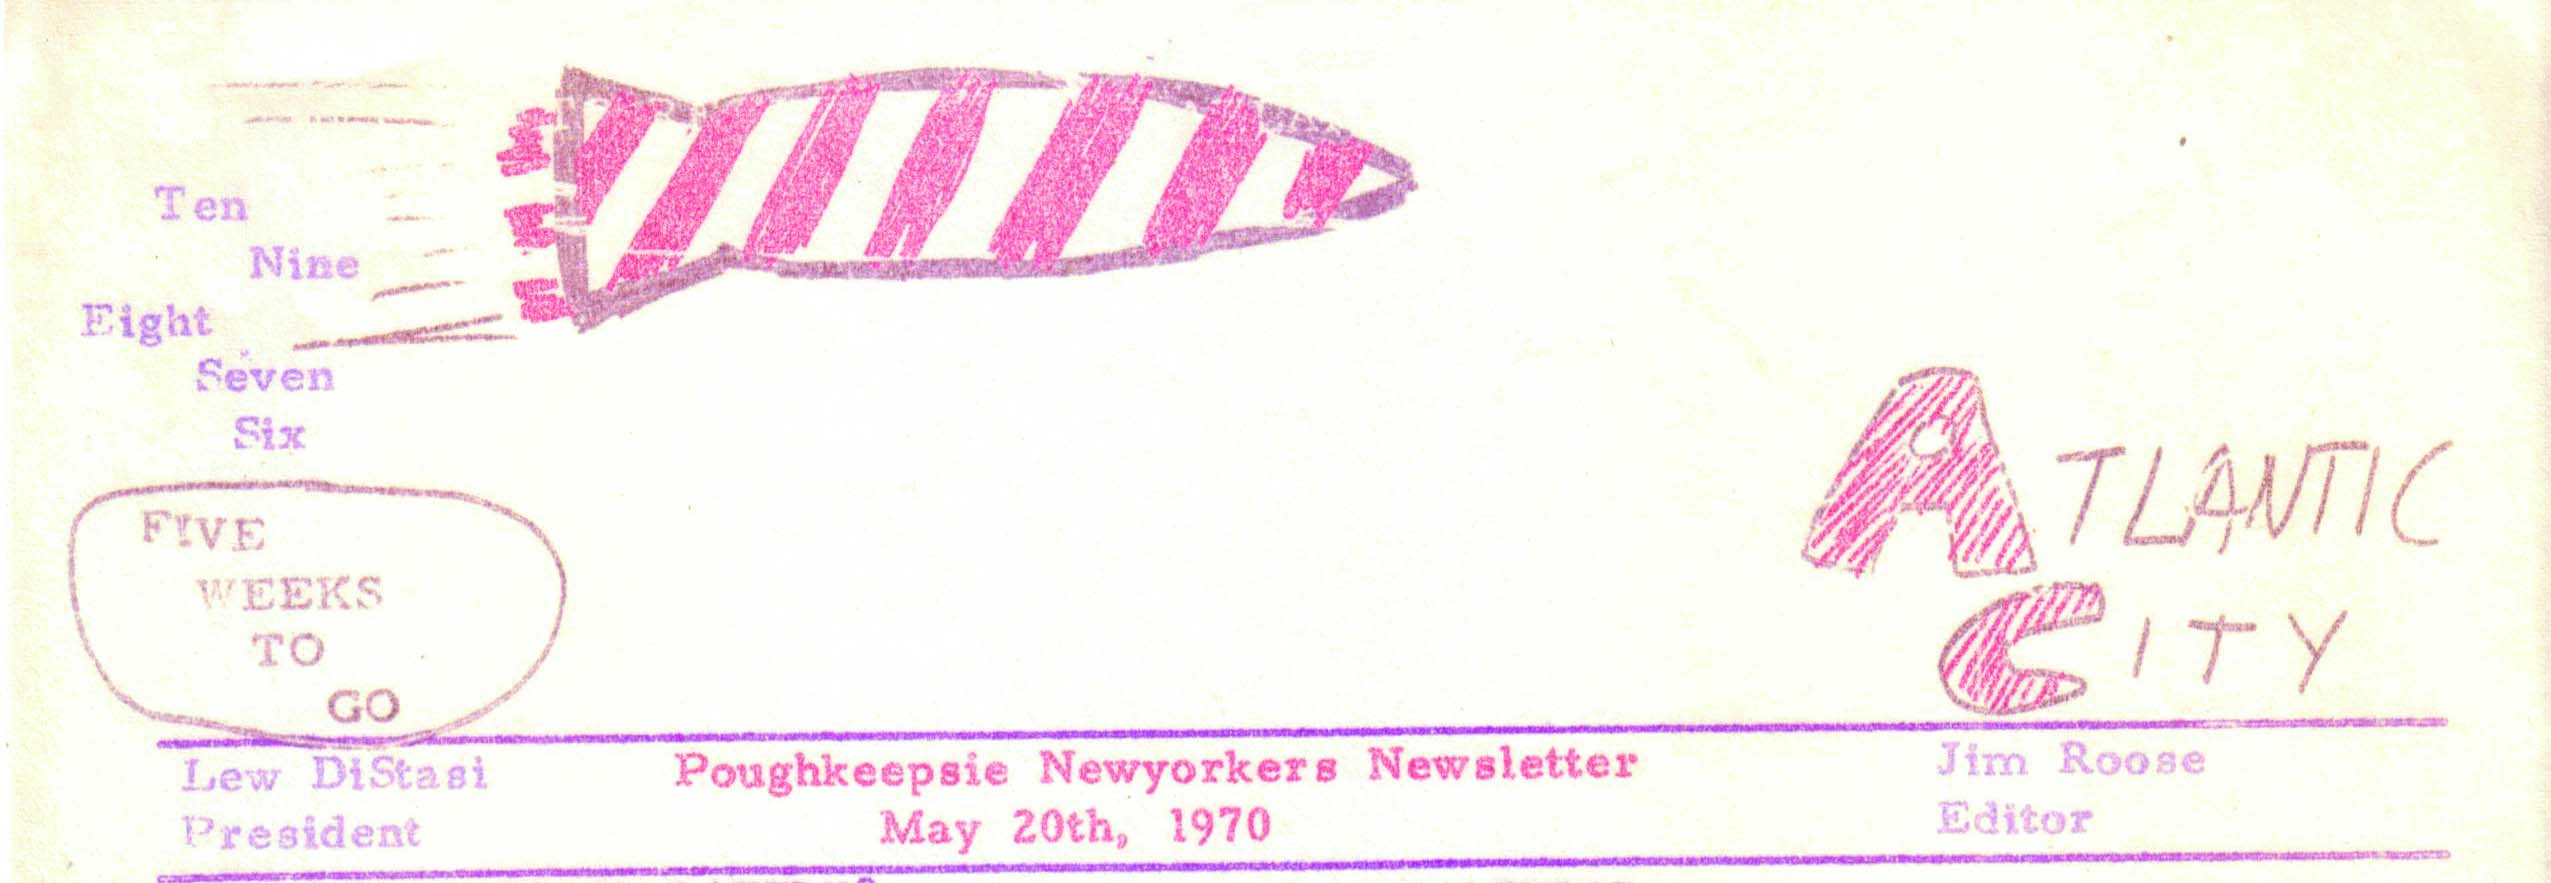 newsletter_1970.JPG